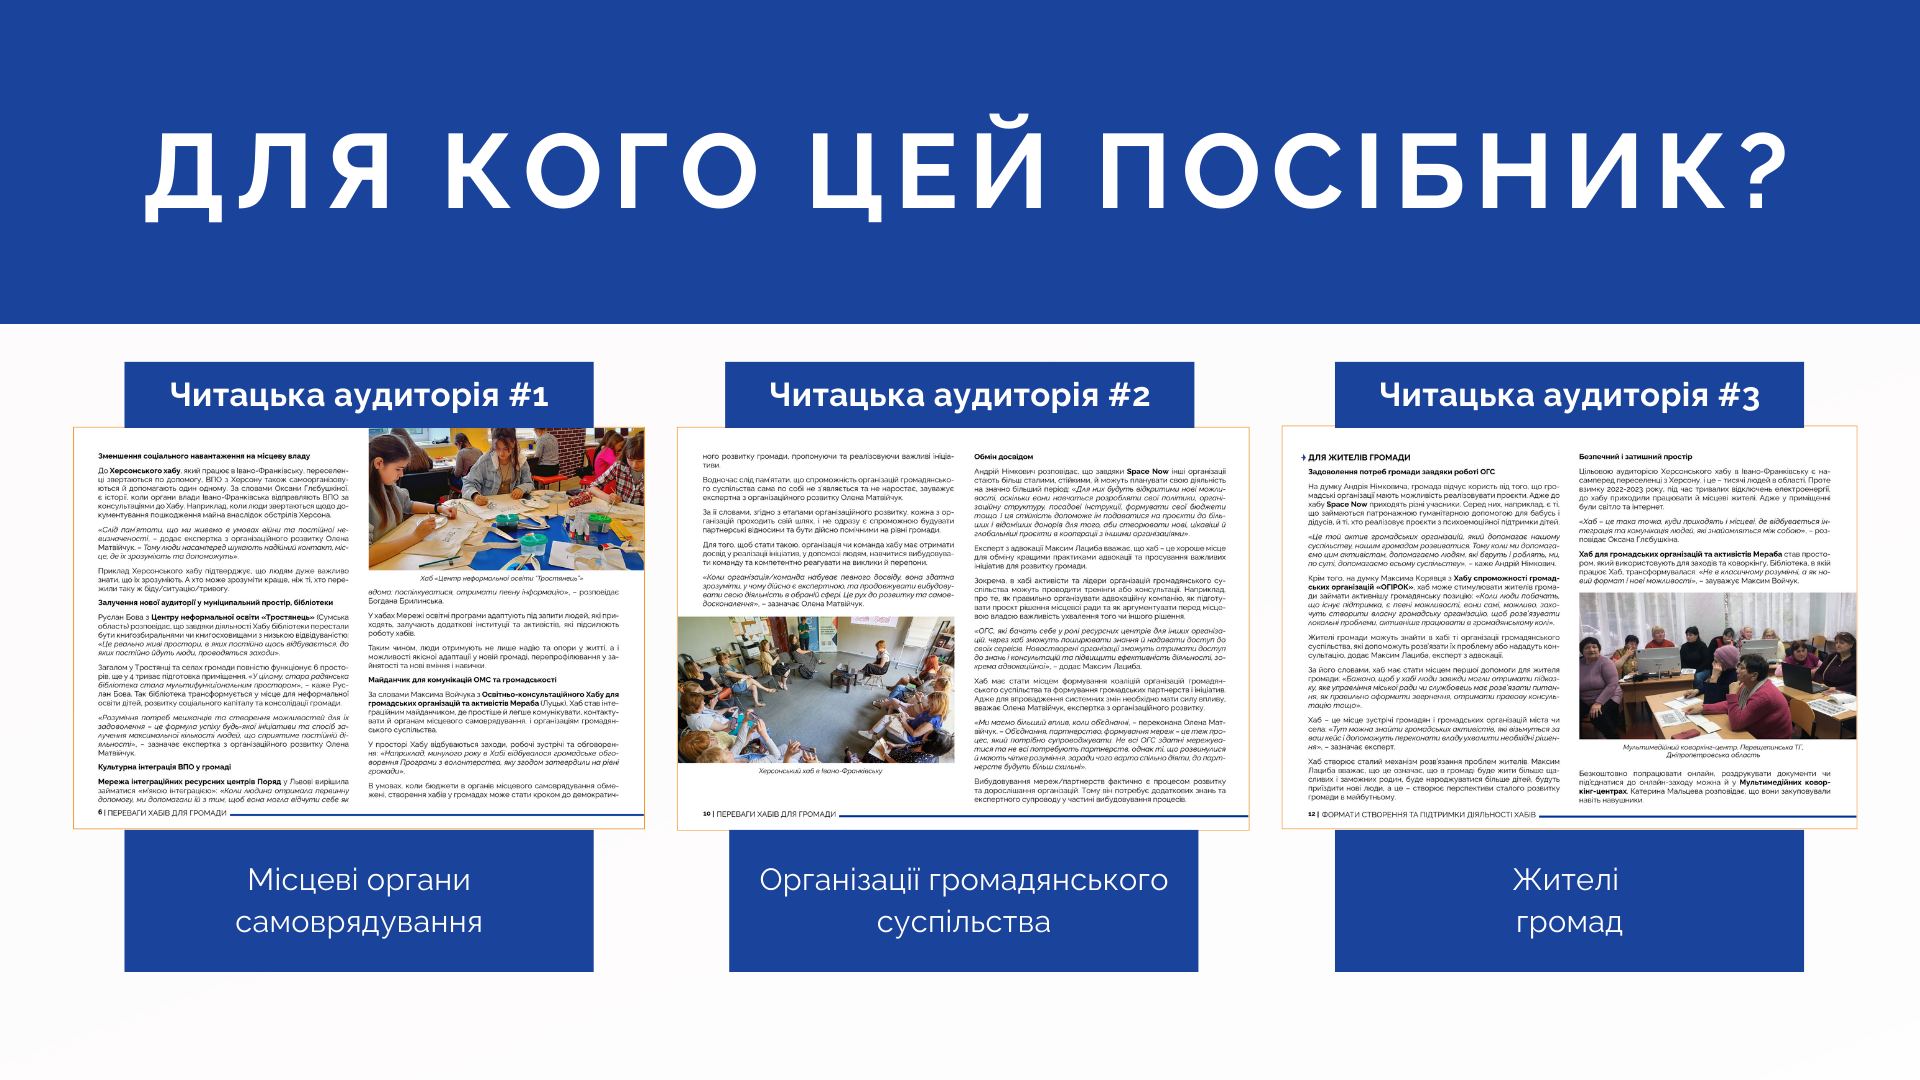 Читачі посібника "Хаби в Україні: мета, формати, ресурси"